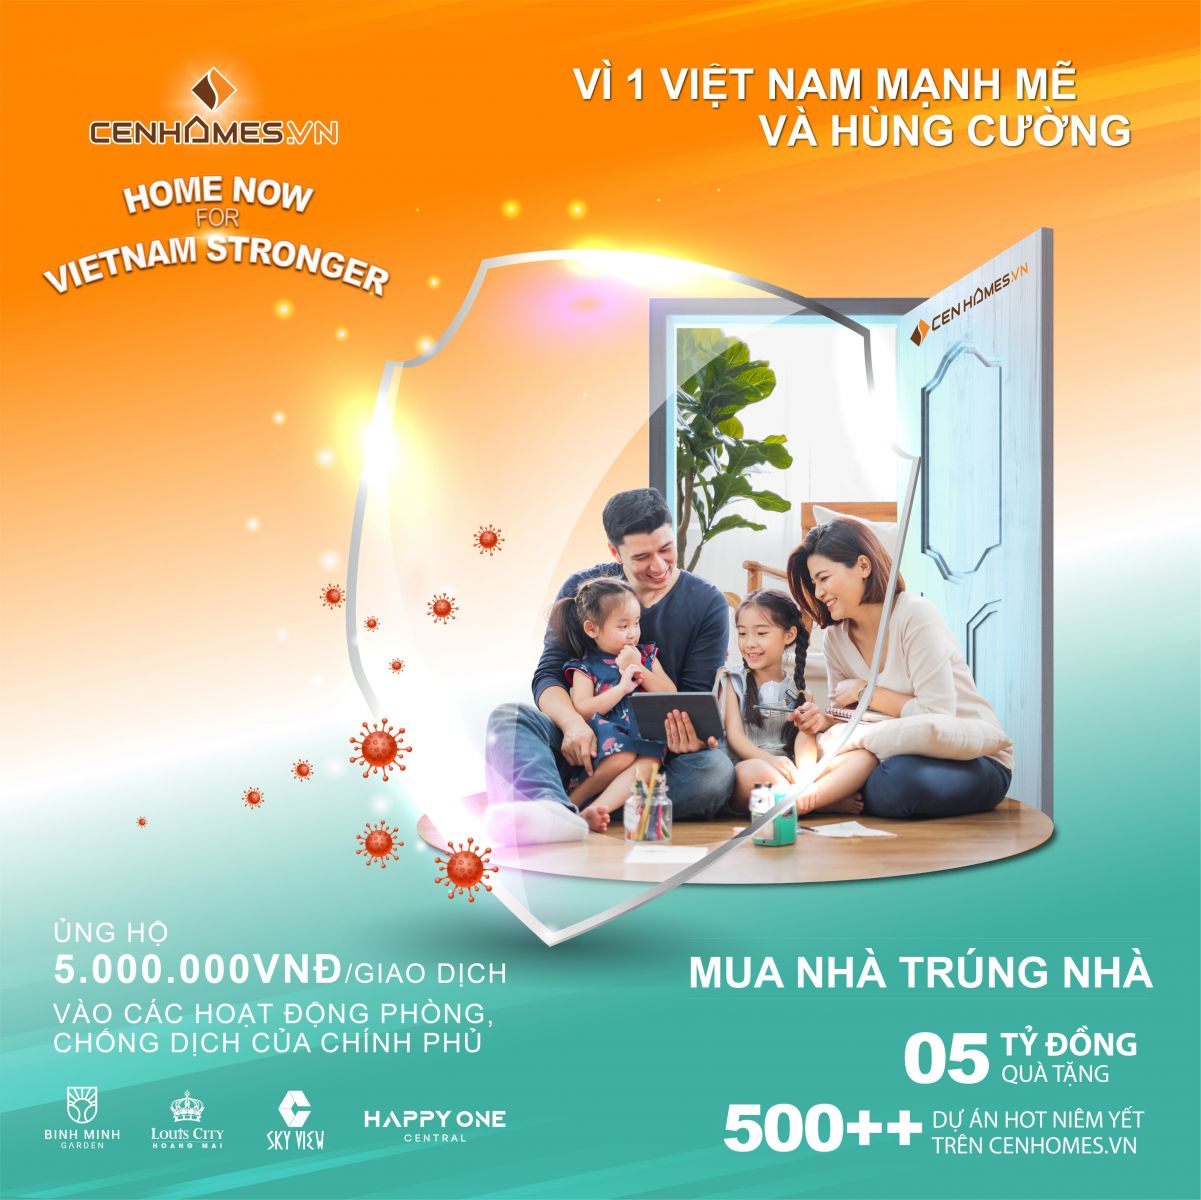 Home now for Vietnam Stronger mang tới cơ hội sở hữu nhà cho hàng ngàn gia đình